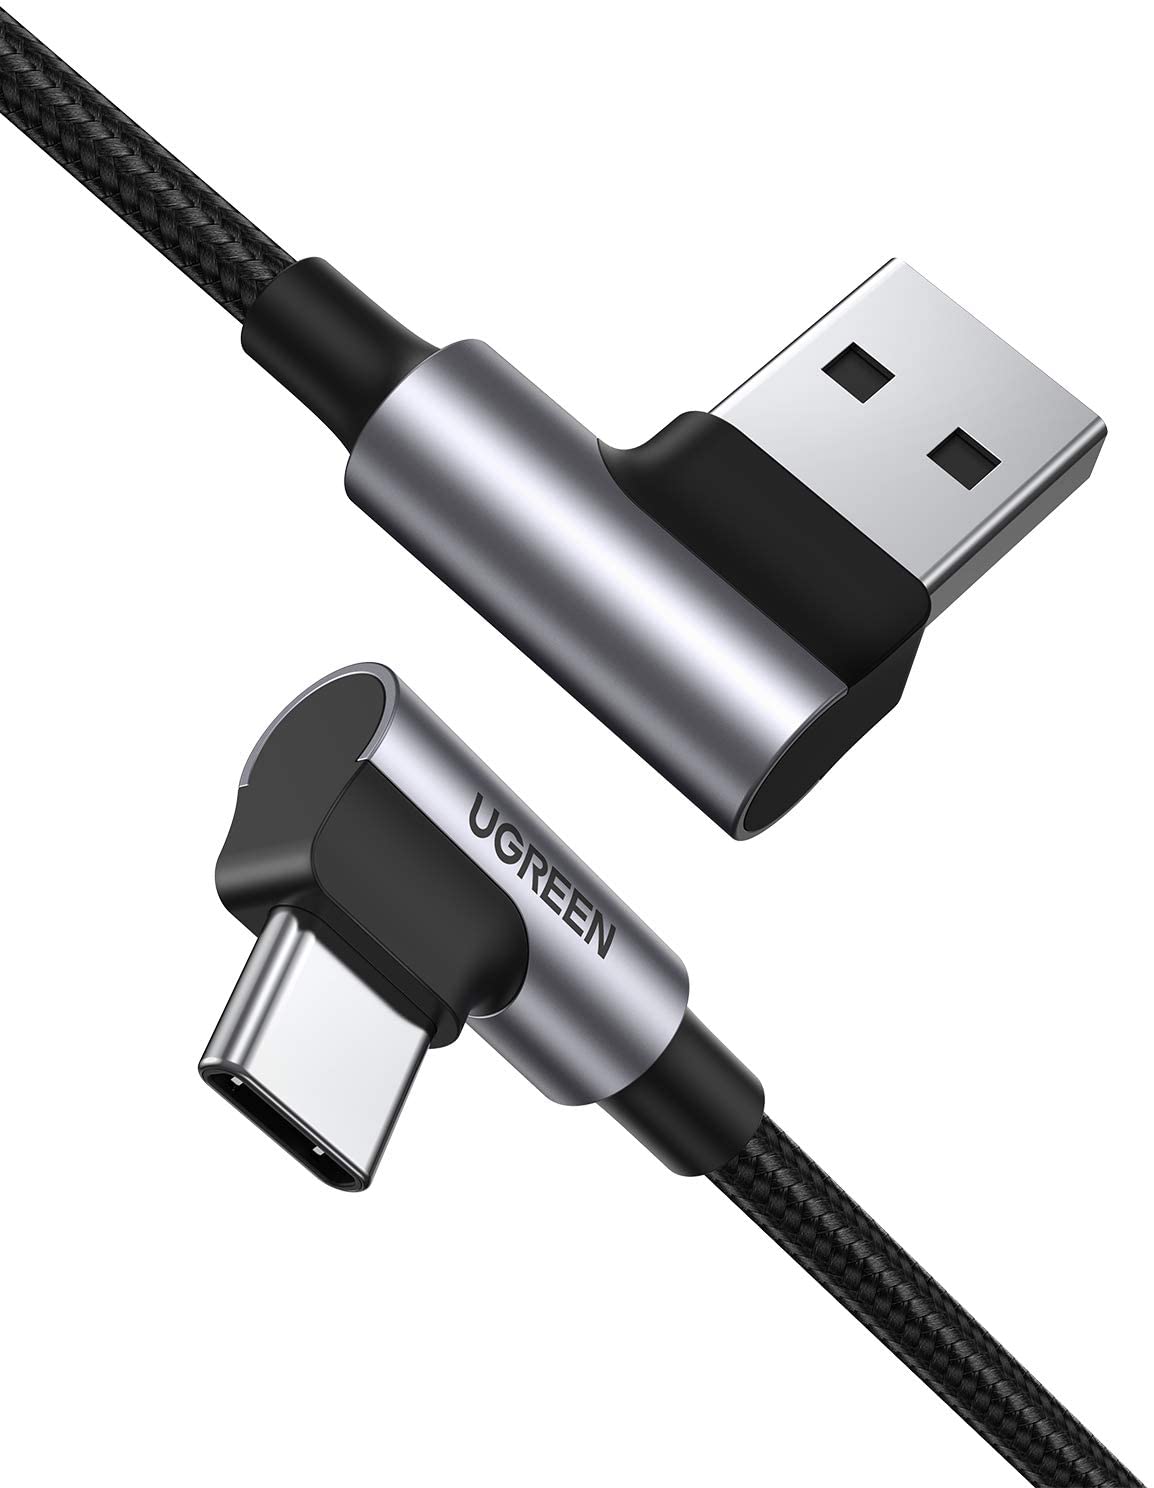  Кабель UGREEN US176 USB 2.0 - USB Type-C, угловой, оплетка, цвет -  серый/черный, длина -  0,5м